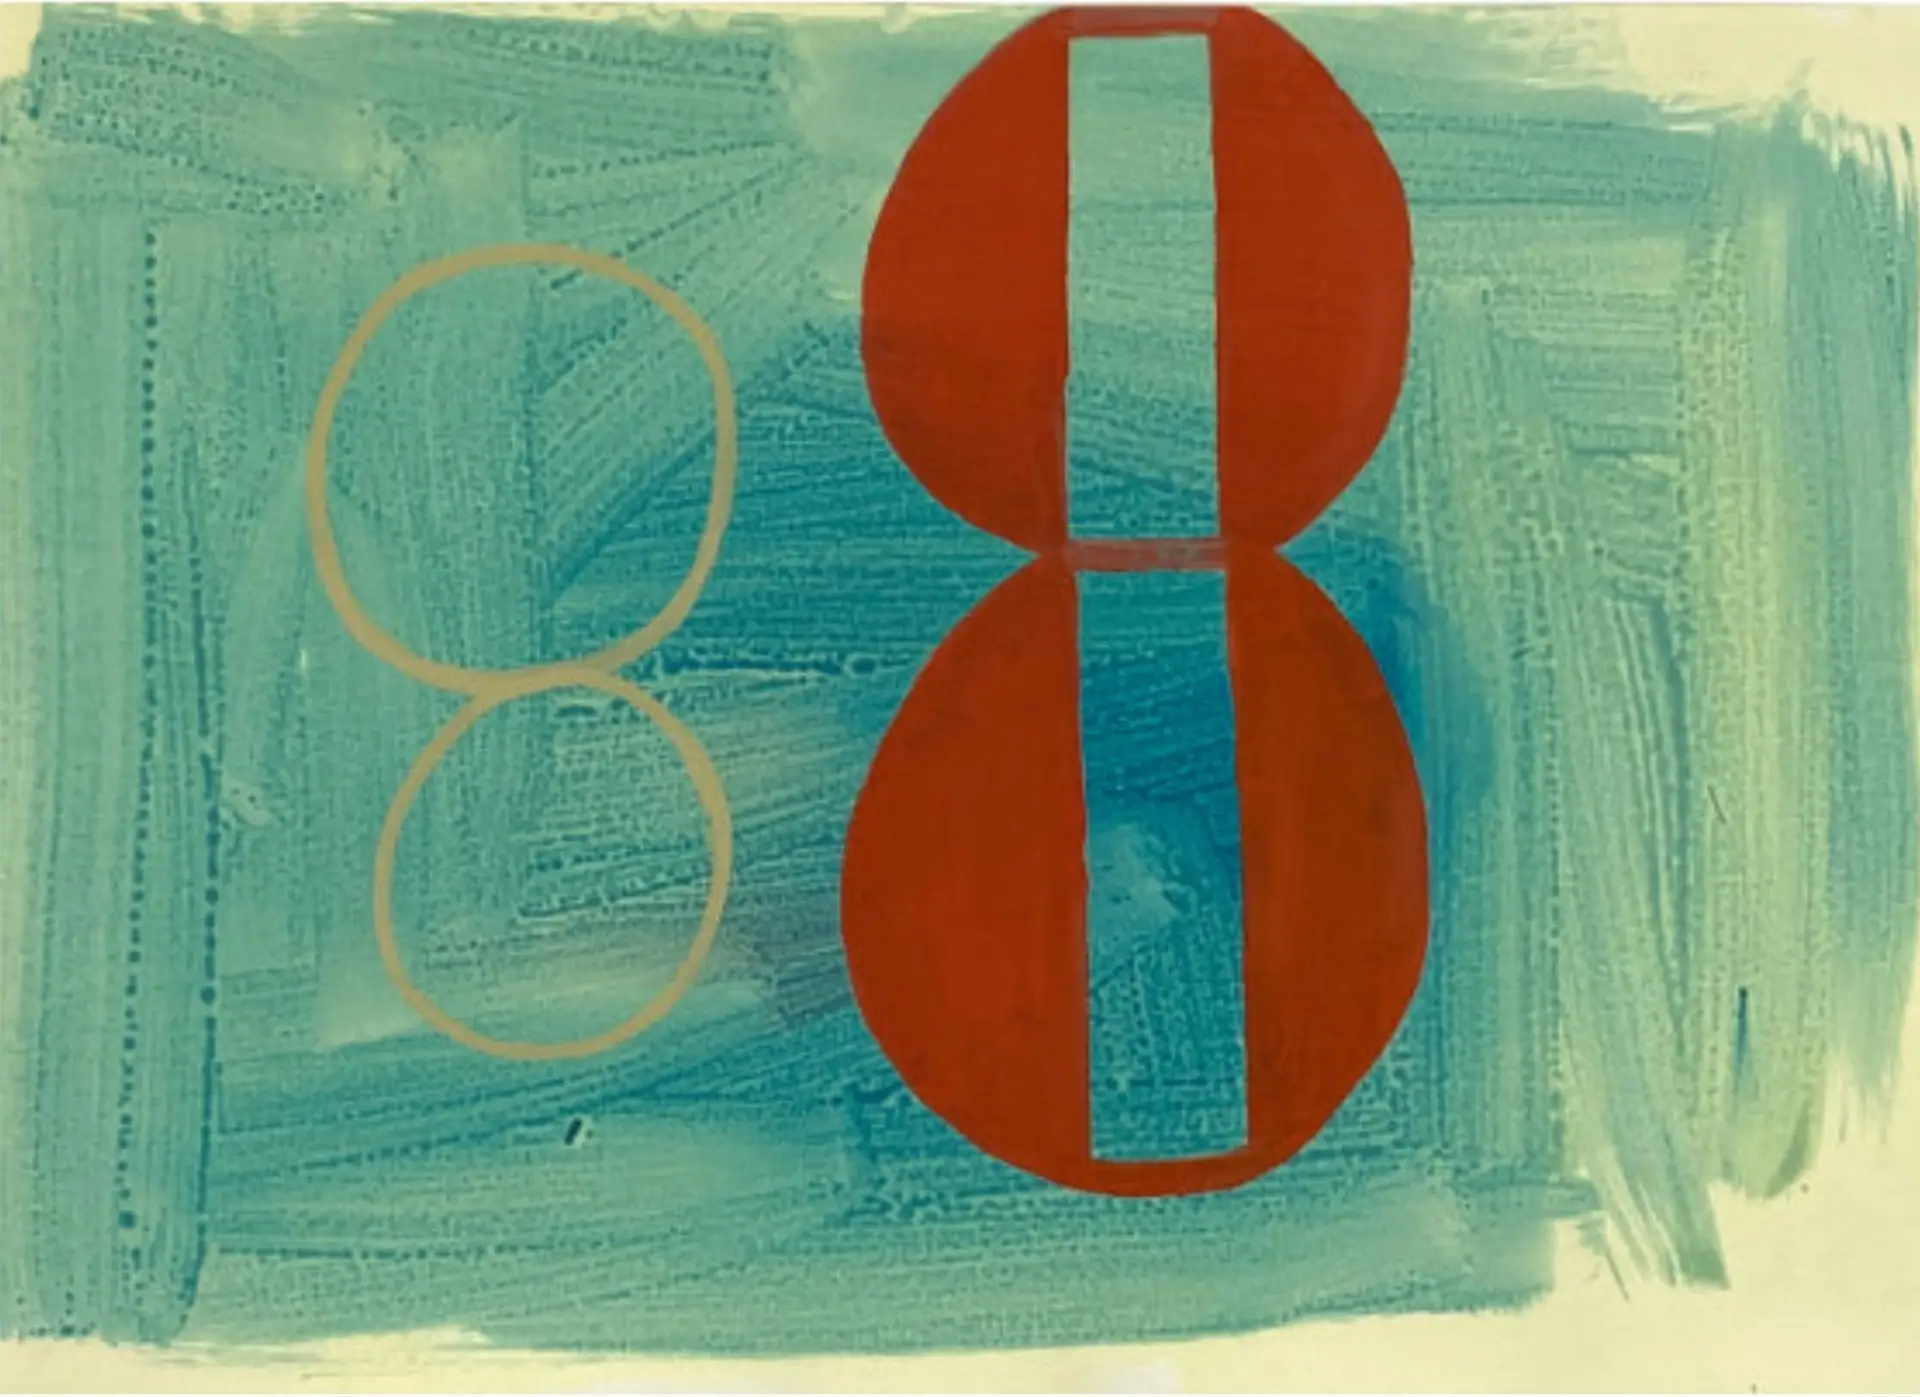 Sem título - série Parte I (2020), de SARA MEALHA. Óleo sobre papel, dimensões 42 x 59,5 cm 